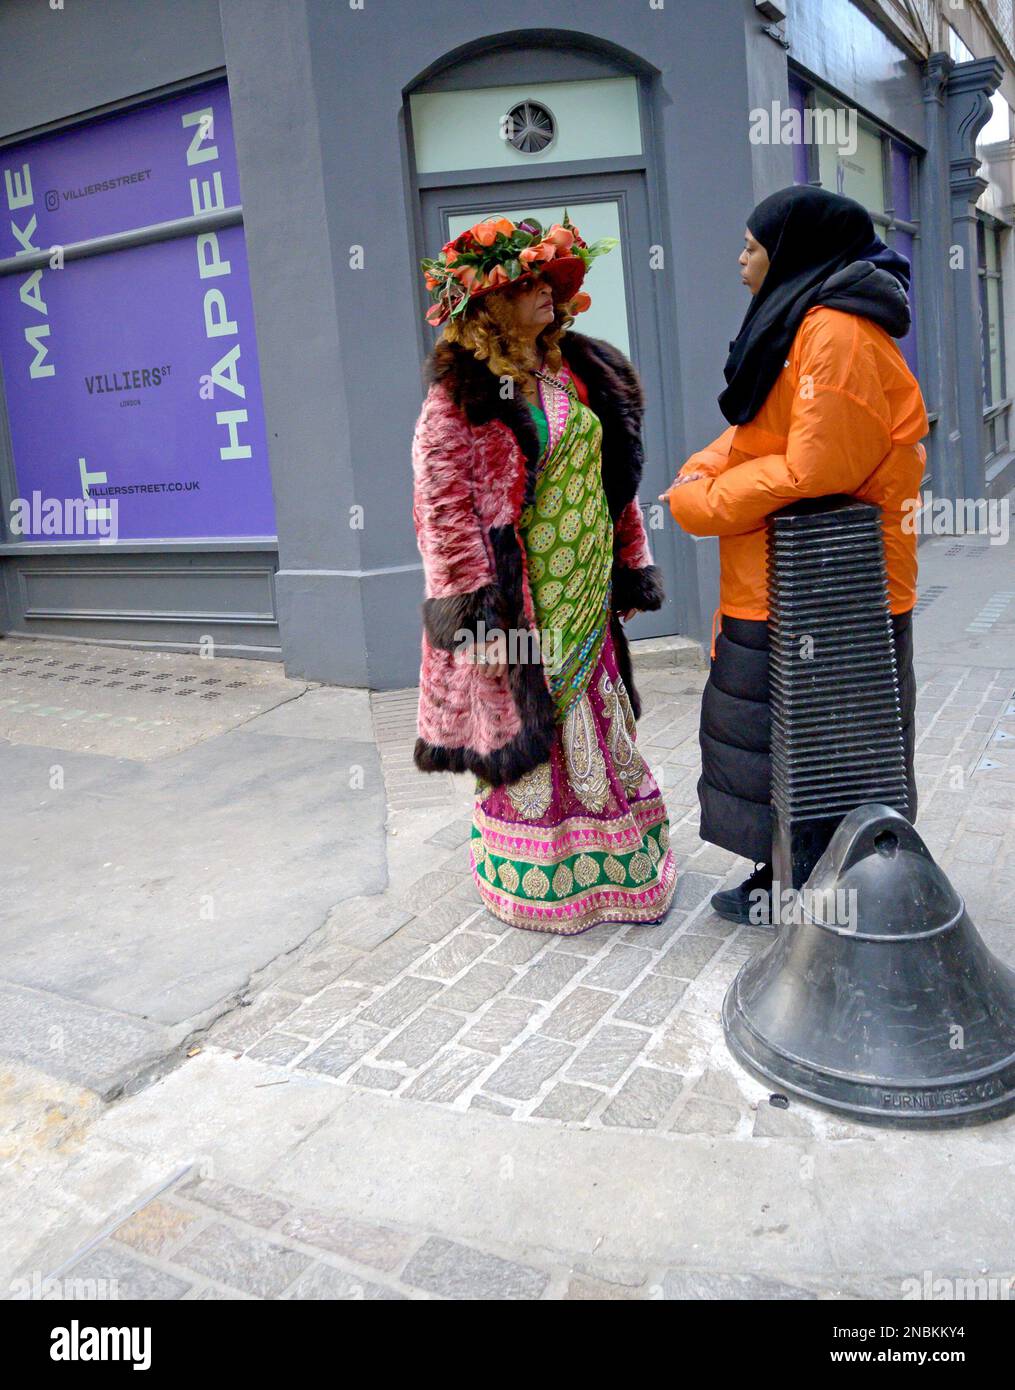 Londres, Angleterre, Royaume-Uni. Une femme aux couleurs vives qui parle à un ouvrier pour l'organisme de bienfaisance Centerpoint, dans la rue Villiers, par Charing Cross Banque D'Images